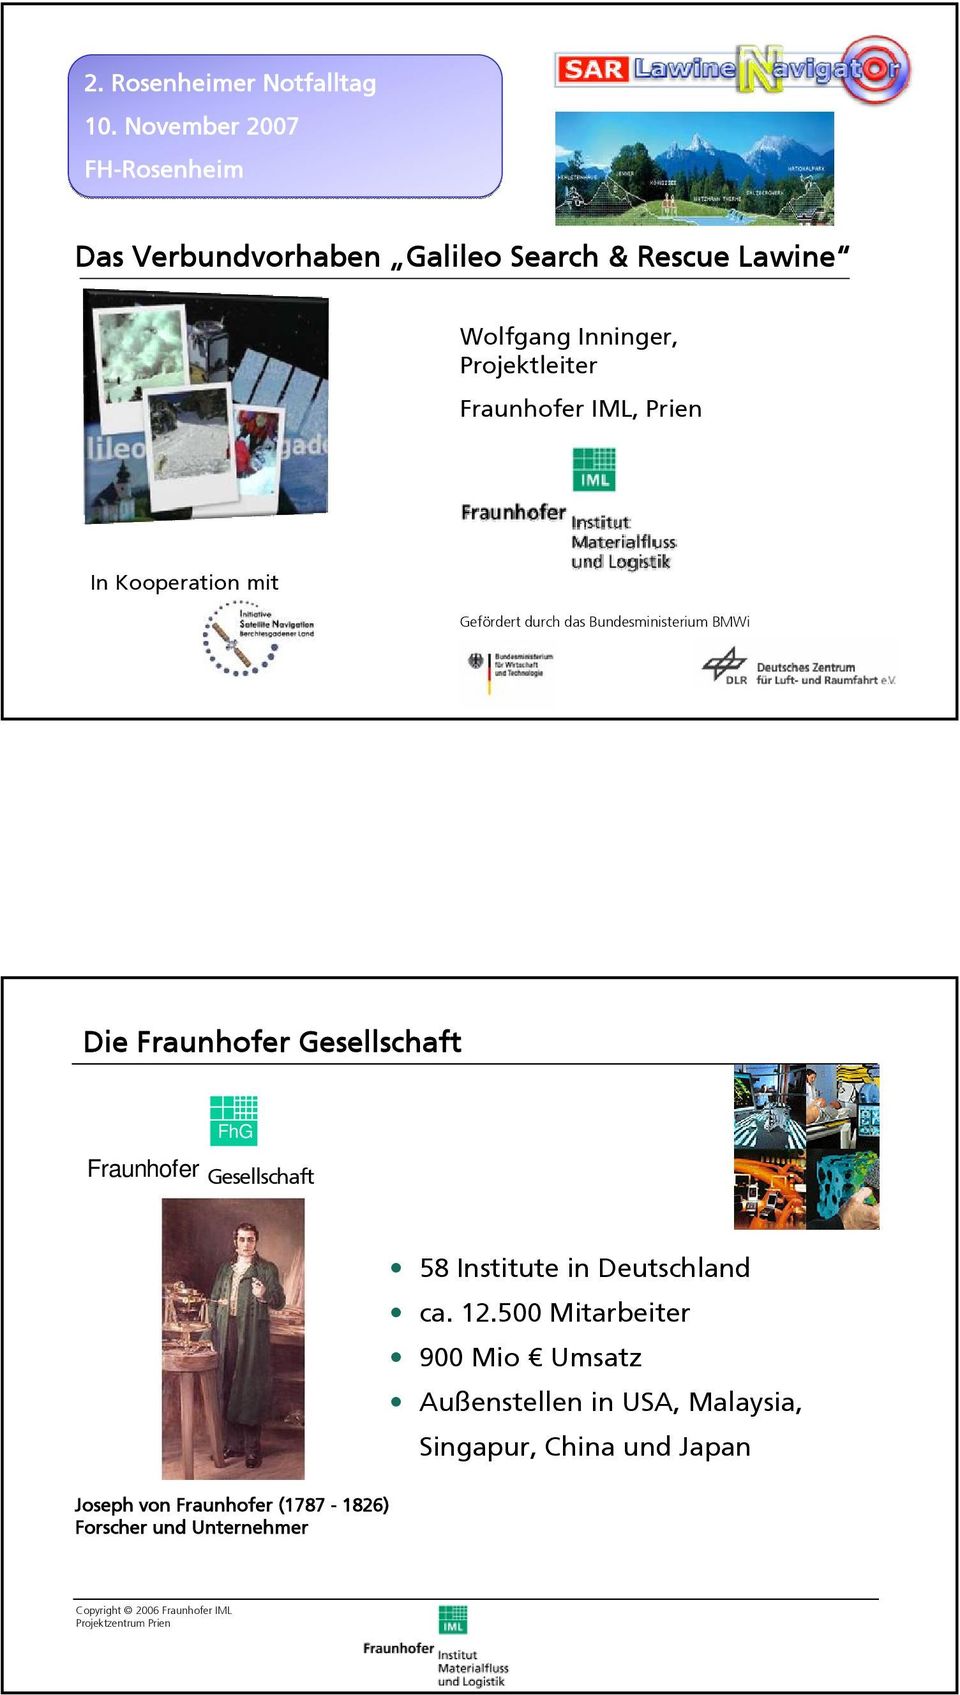 Prien In Kooperation it Gefördert durch das Bundesinisteriu BMWi Die Fraunhofer Gesellschaft FhG Fraunhofer Gesellschaft